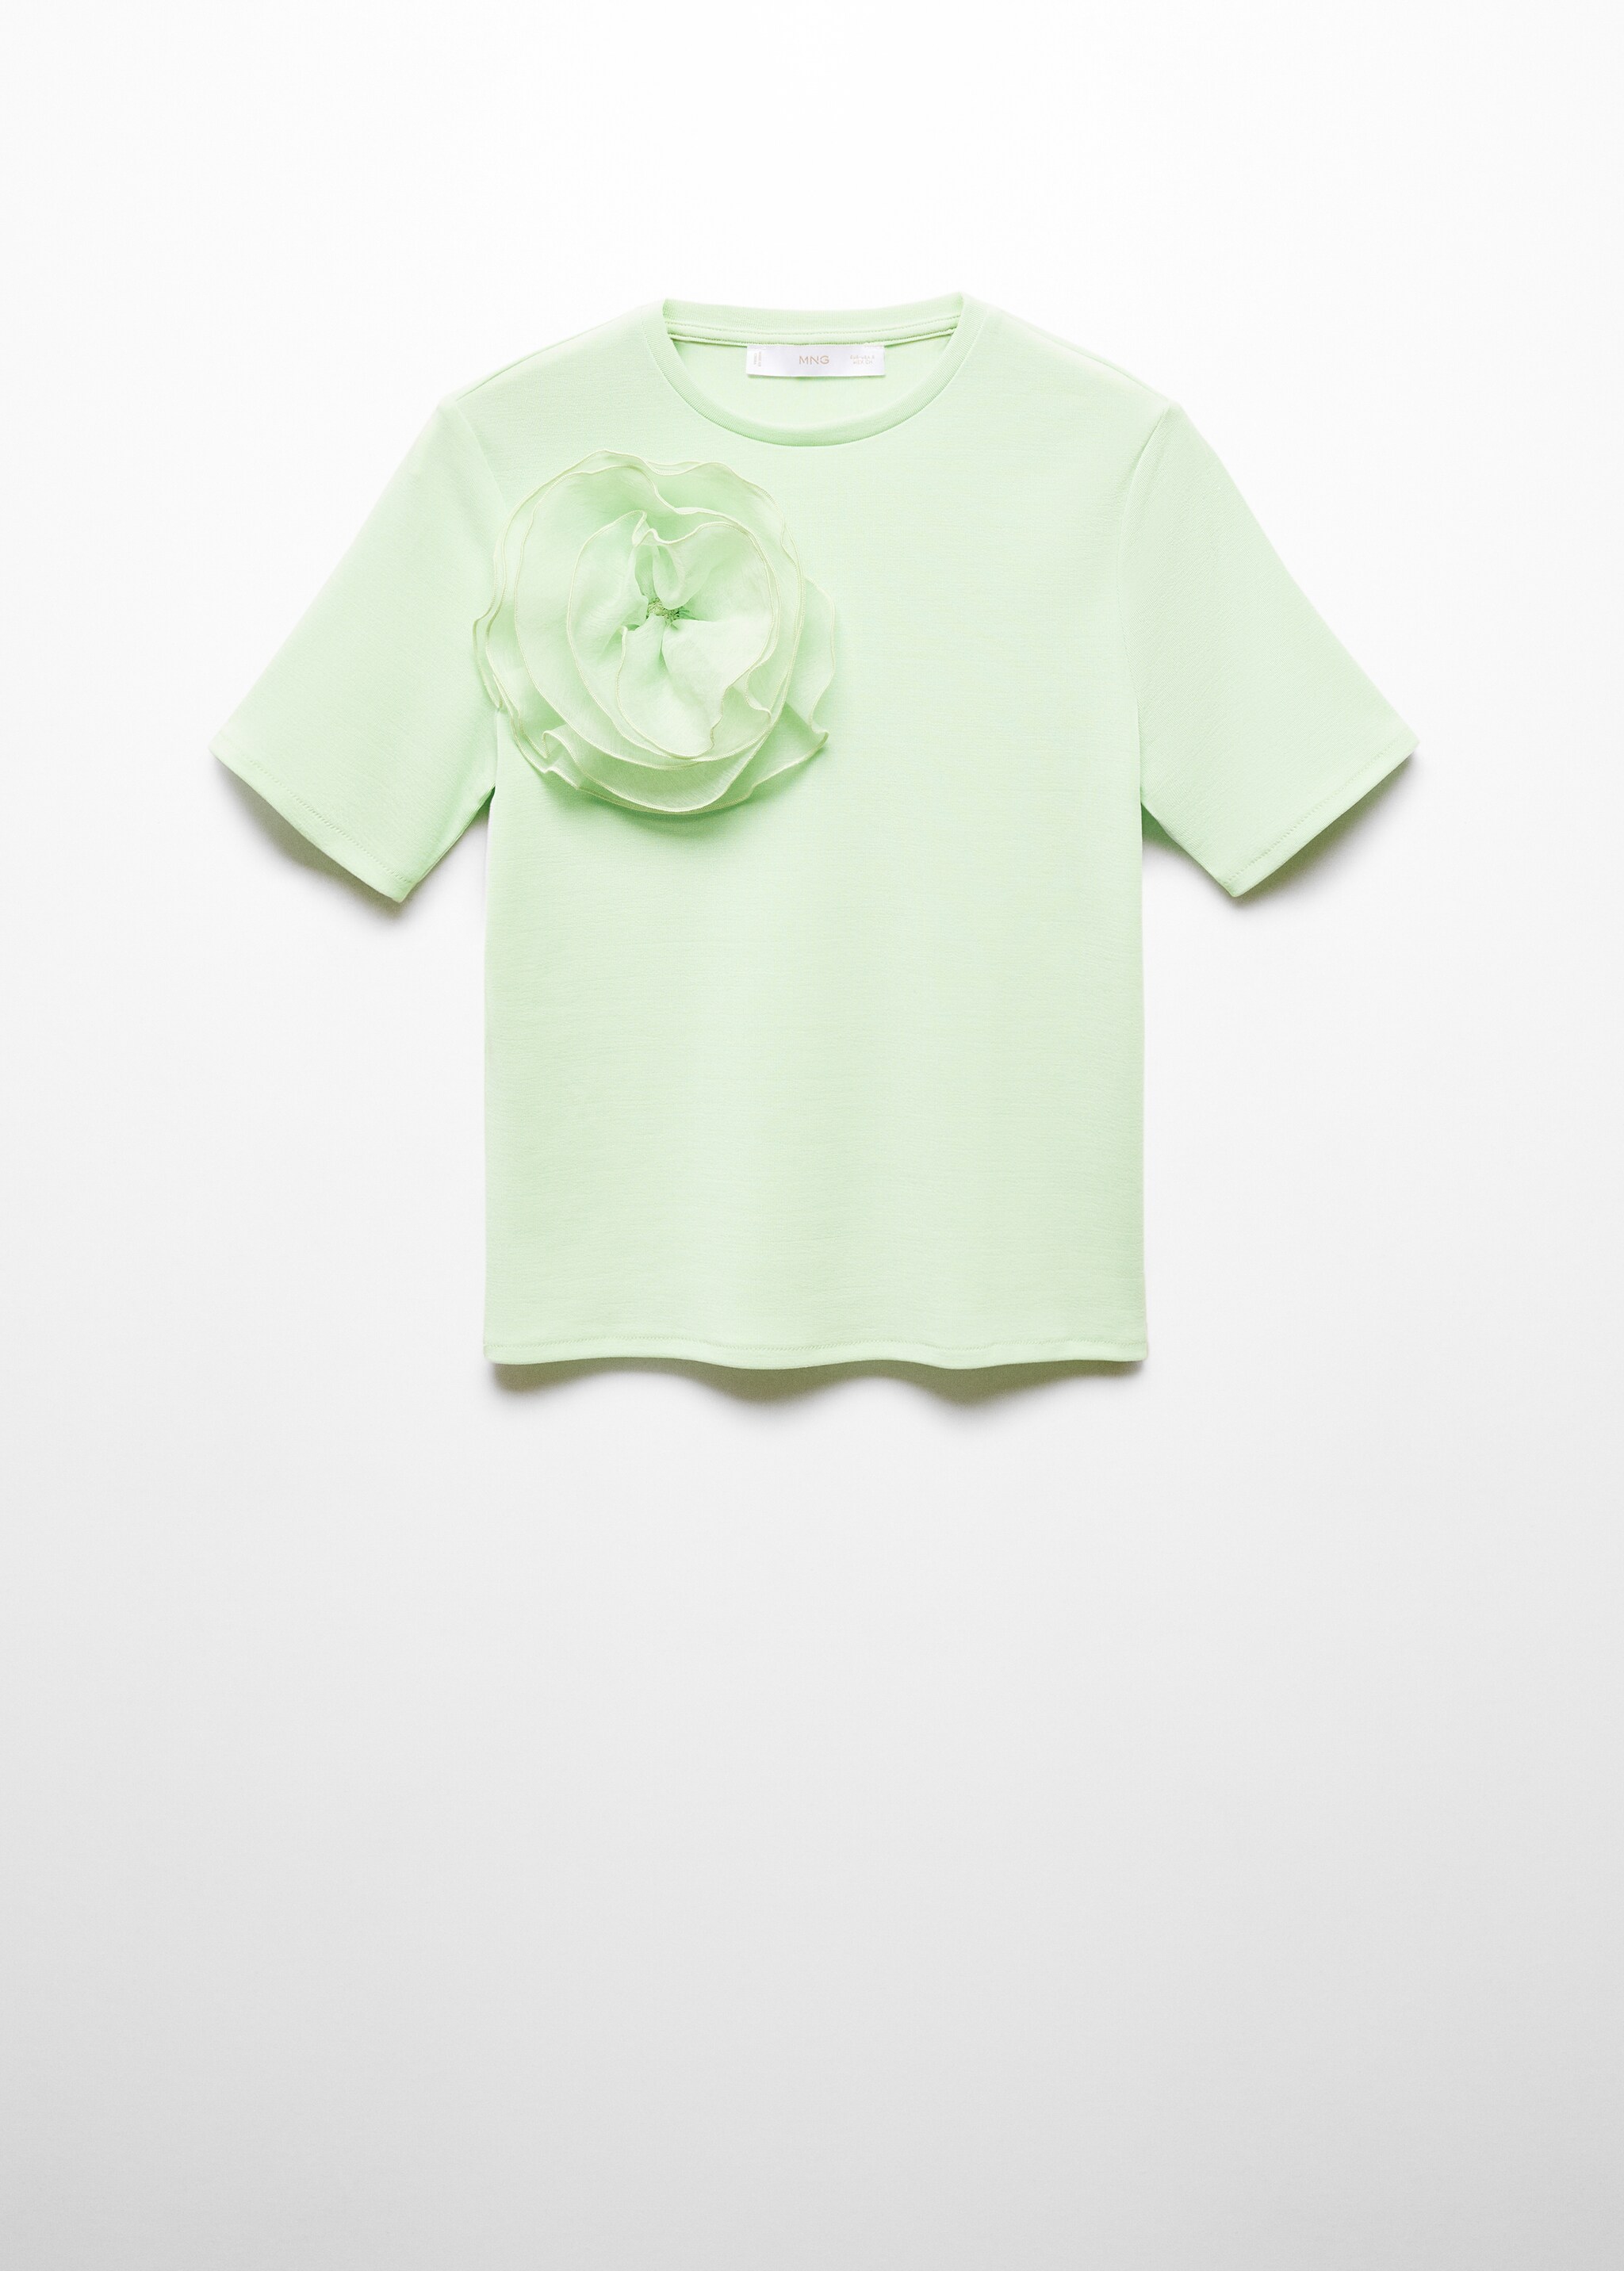 Camiseta detalle maxi flor - Artículo sin modelo